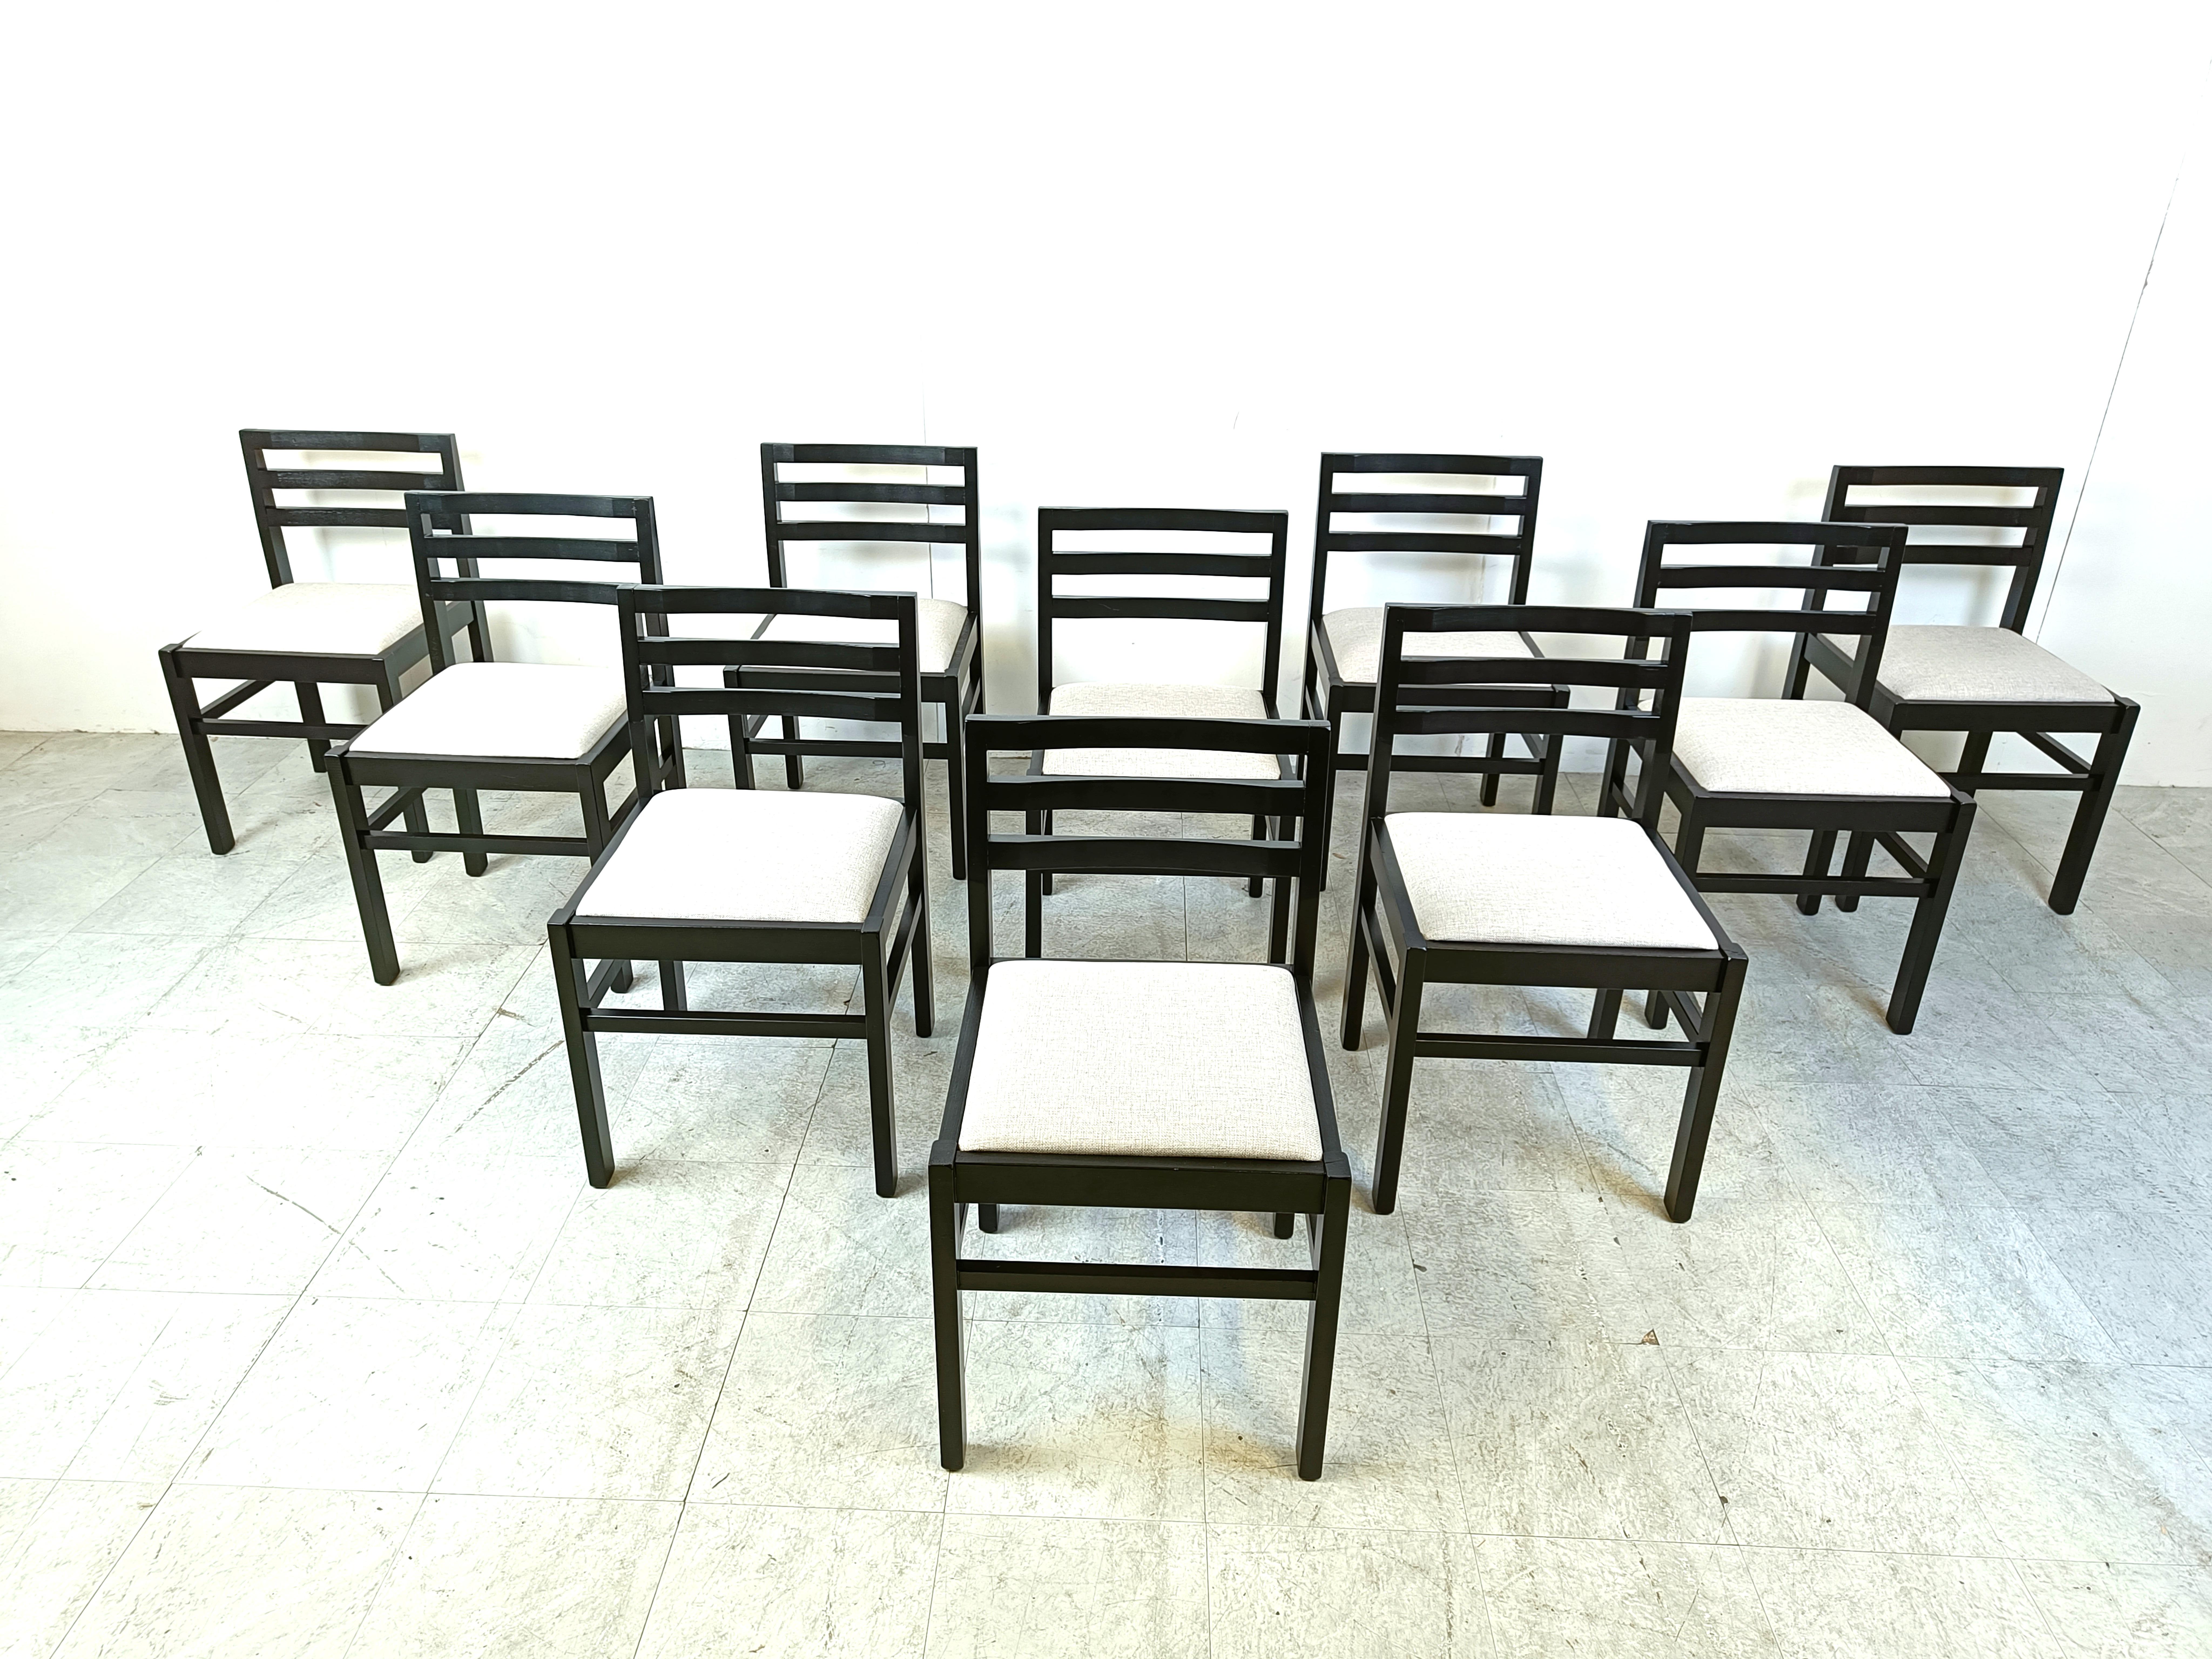 Brutalistische Esszimmerstühle aus der Mitte des Jahrhunderts mit schwarzen Holzrahmen und hellgrauen Stoffsitzen.

Sehr robuste Stühle mit einem schönen Design.

Sehr guter Zustand

1970er Jahre - Deutschland

Abmessungen:
Höhe: 80cm
Sitzhöhe: